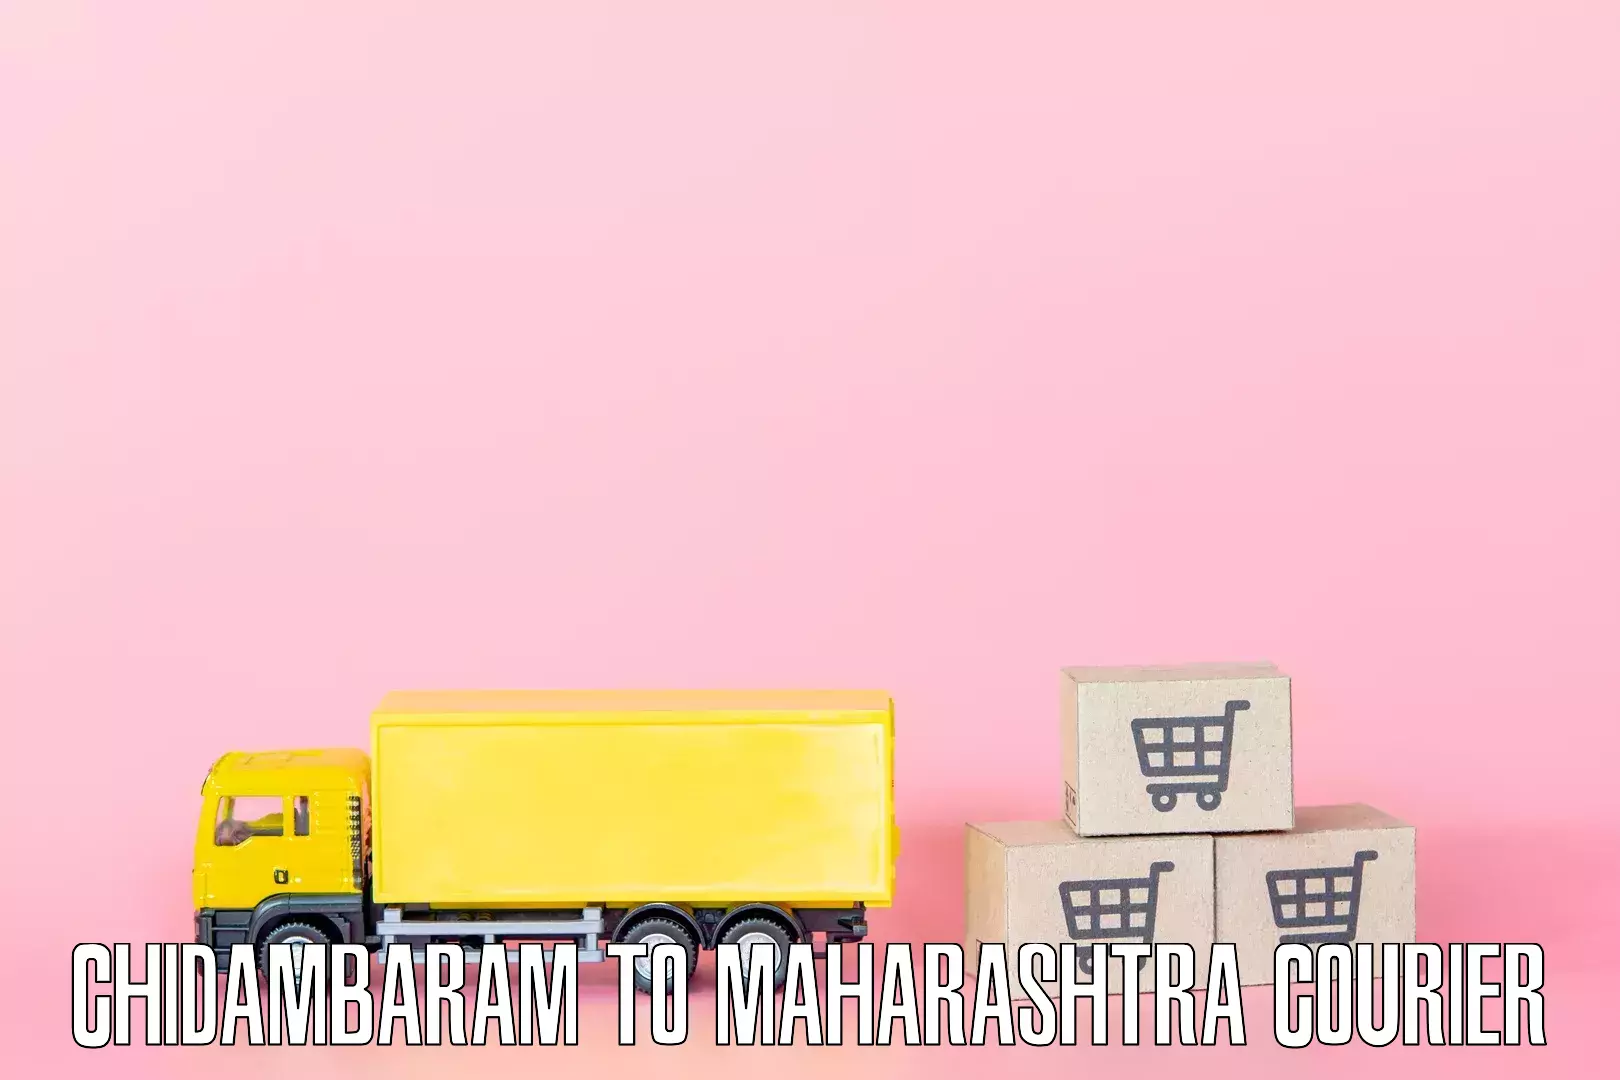 Home moving service Chidambaram to Maharashtra